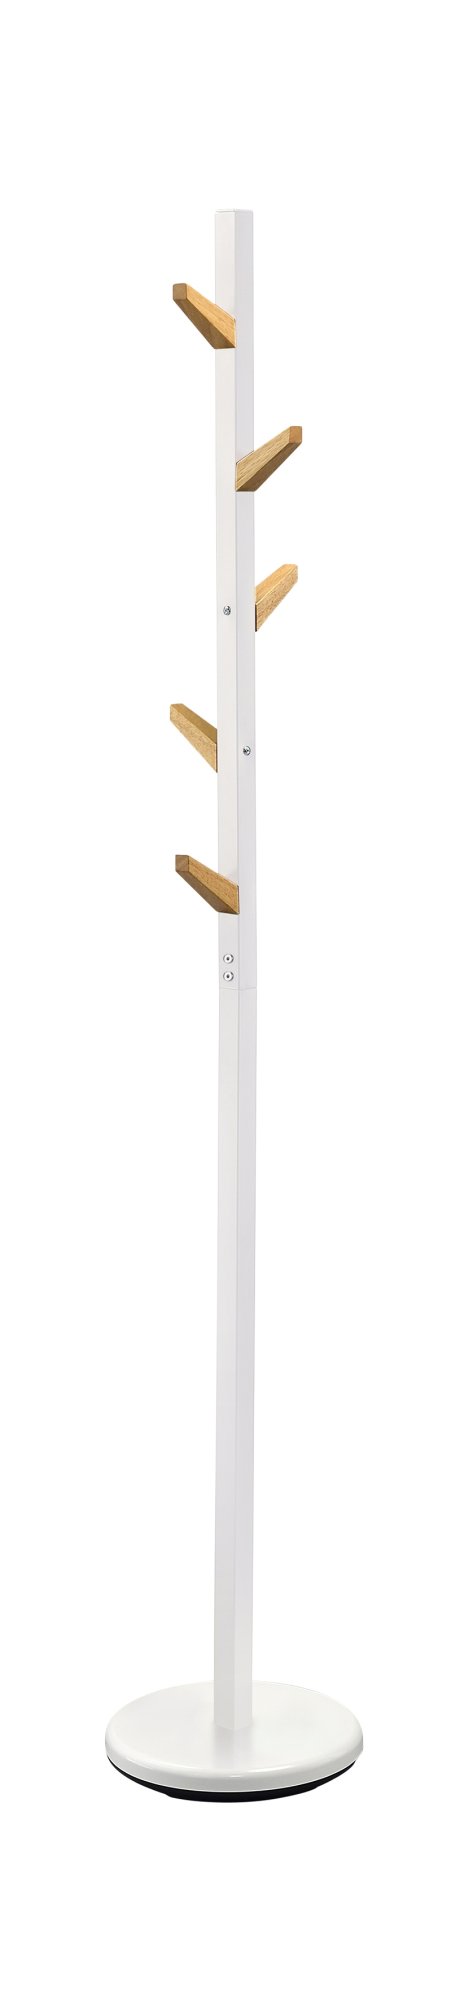 Stojanový věšák 28x177cm - Bílá - Přírodní